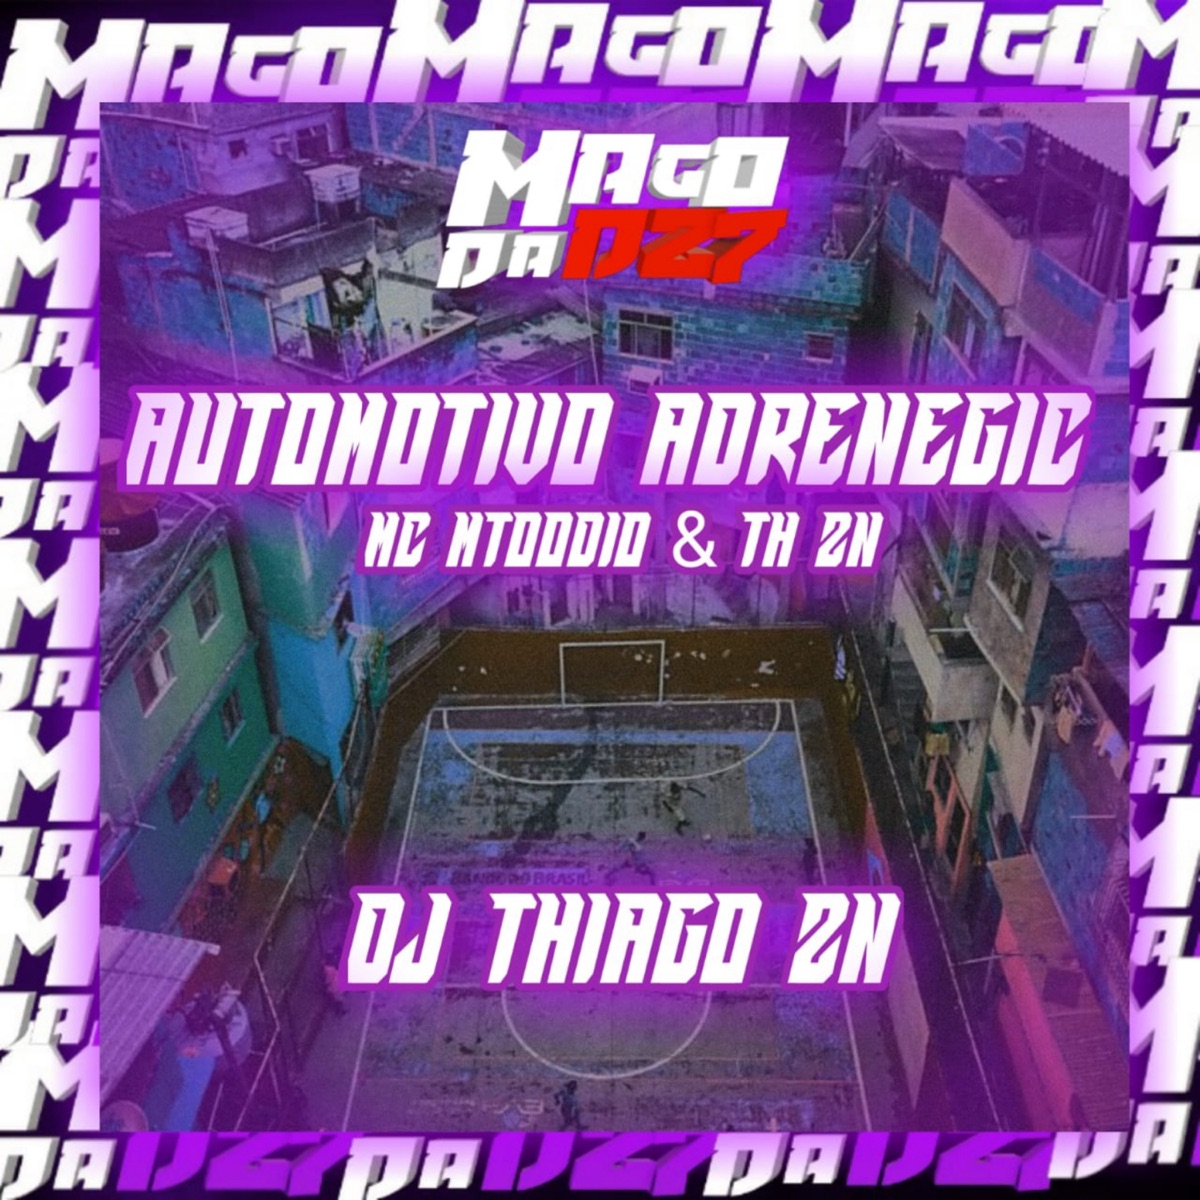 Joga Essa Bct Pros Meno Que Tá de Andy - Agora Eu Sou Solteira - Song by MC  MTOODIO & DJ Biel da DZ7 - Apple Music